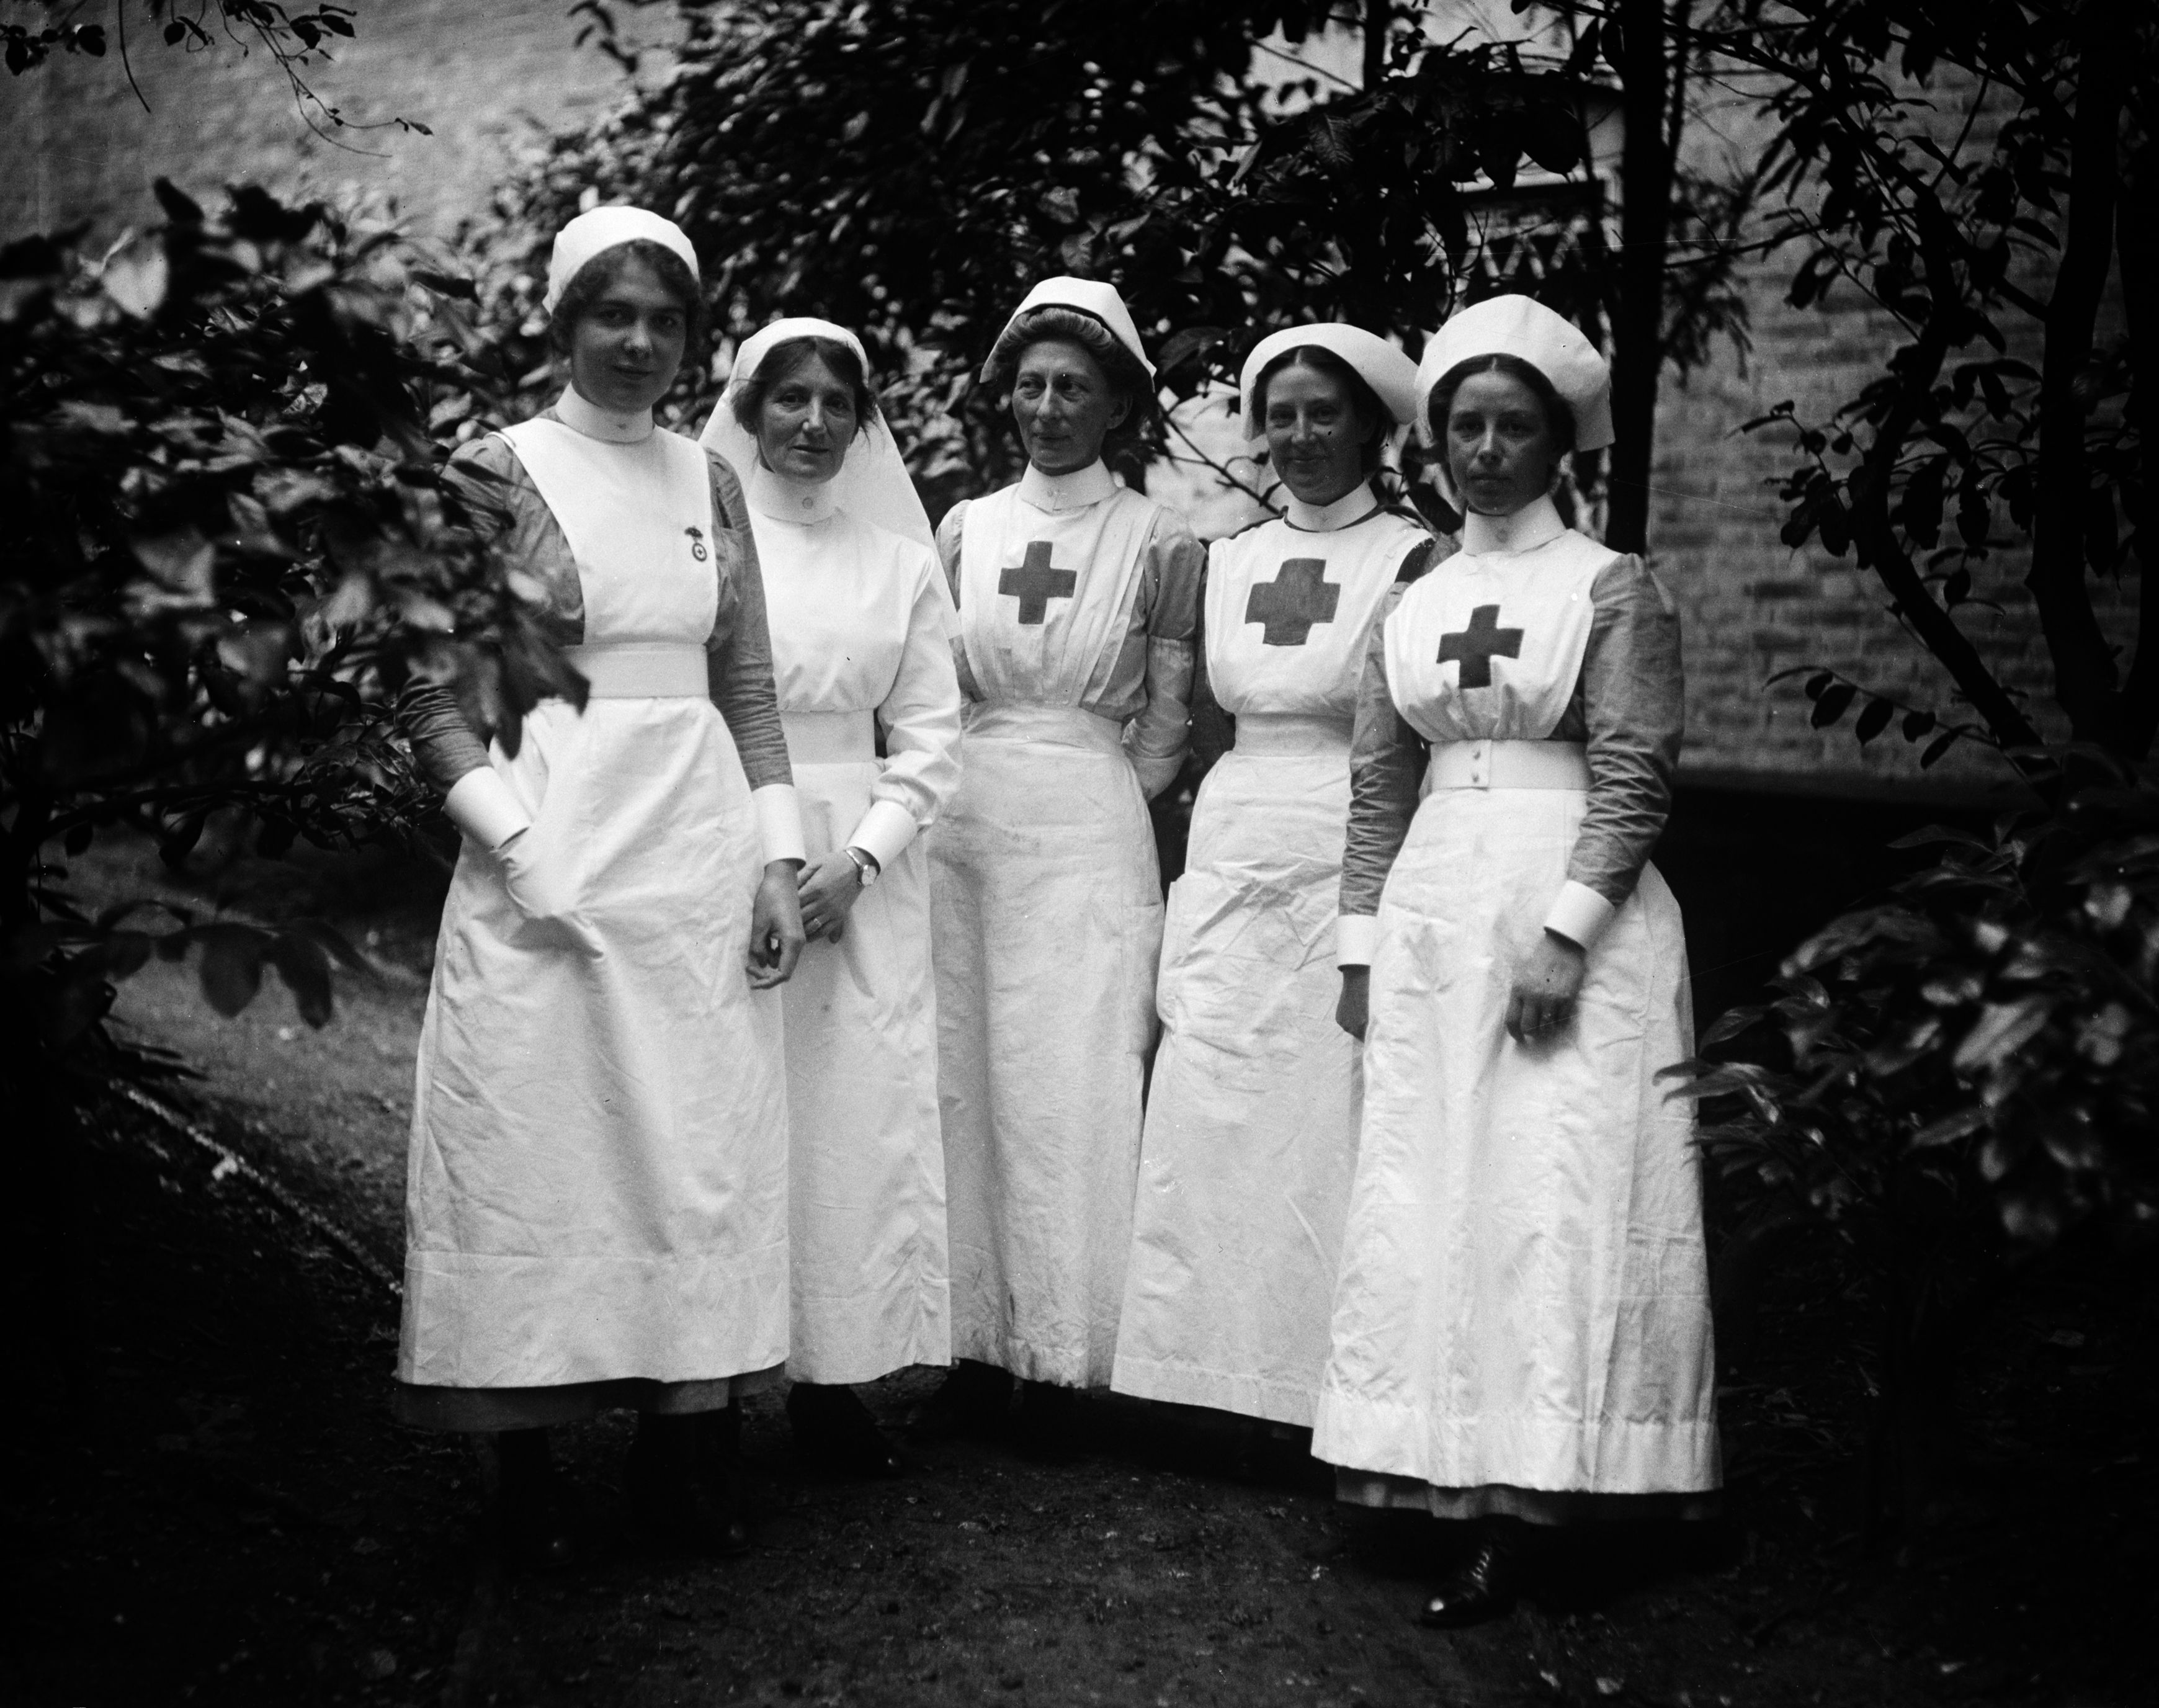 Red Cross Nurses In Ww1